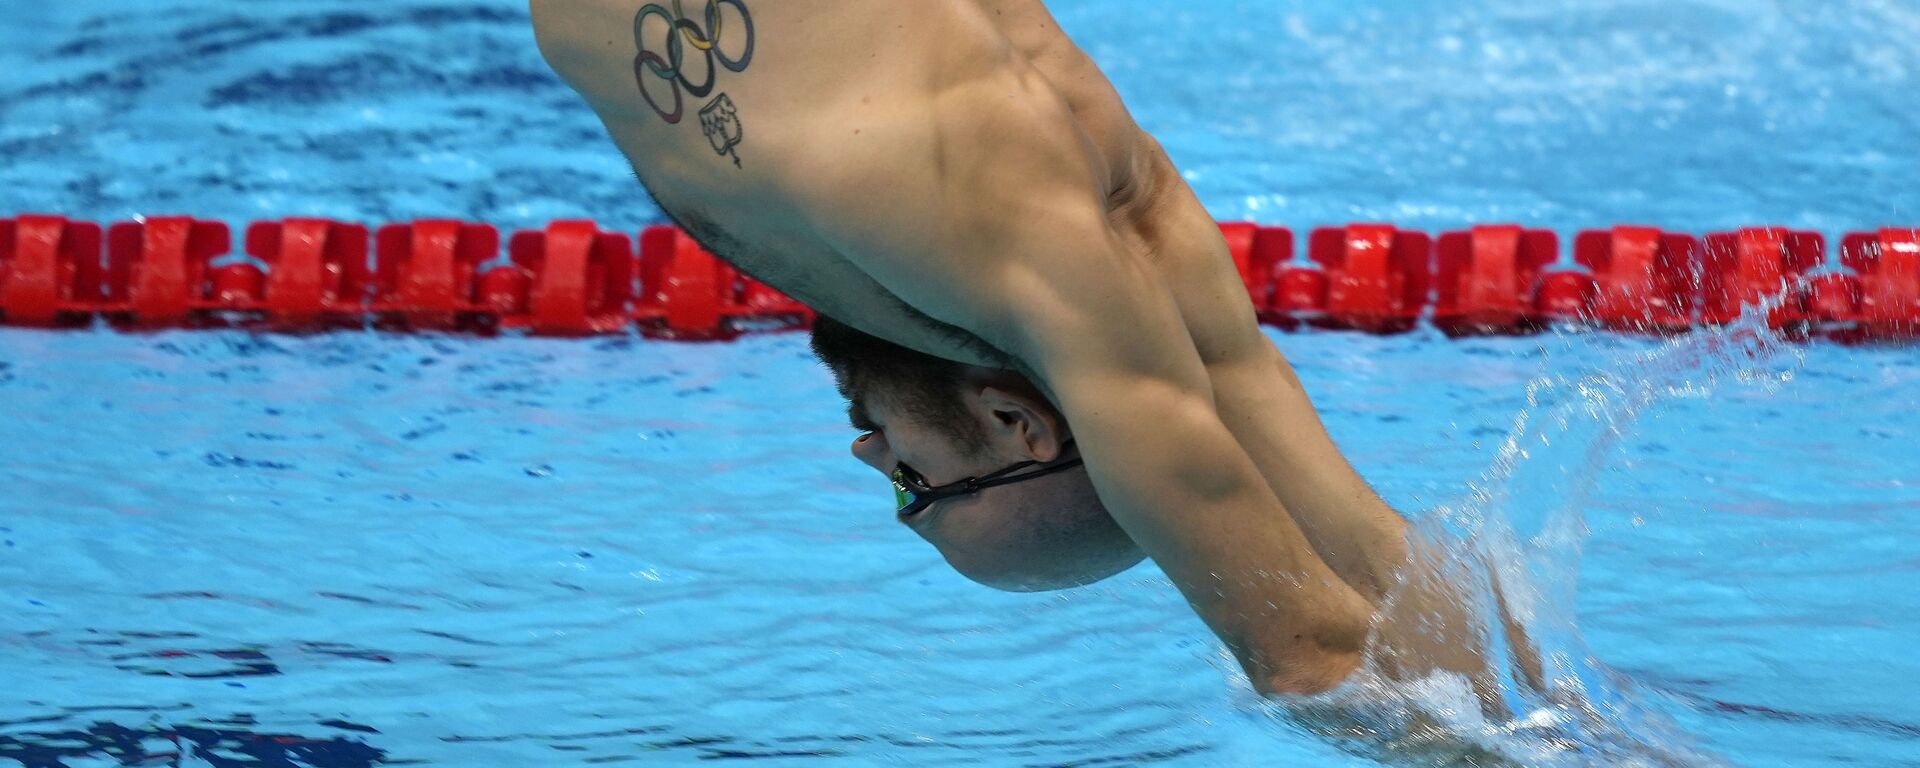 Пловец с олимпийской татуировкой делает упражнения во время тренировки на летних Олимпийских играх 2020  - Sputnik Узбекистан, 1920, 28.07.2021